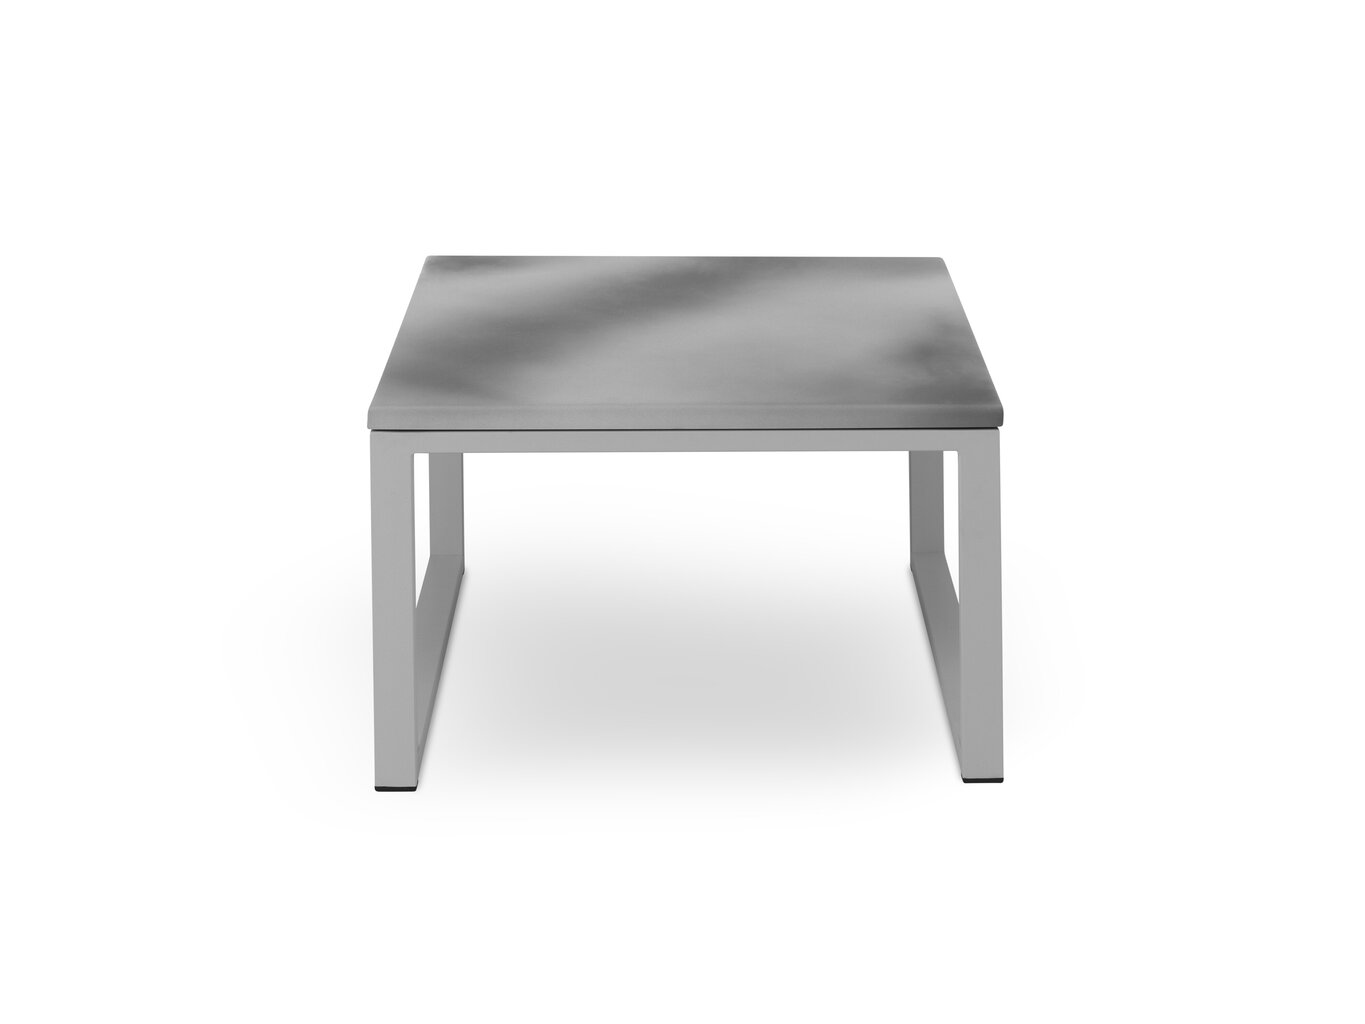 Lauko stalas Calme Jardin Nicea M, pilkas/šviesiai pilkas kaina ir informacija | Lauko stalai, staliukai | pigu.lt